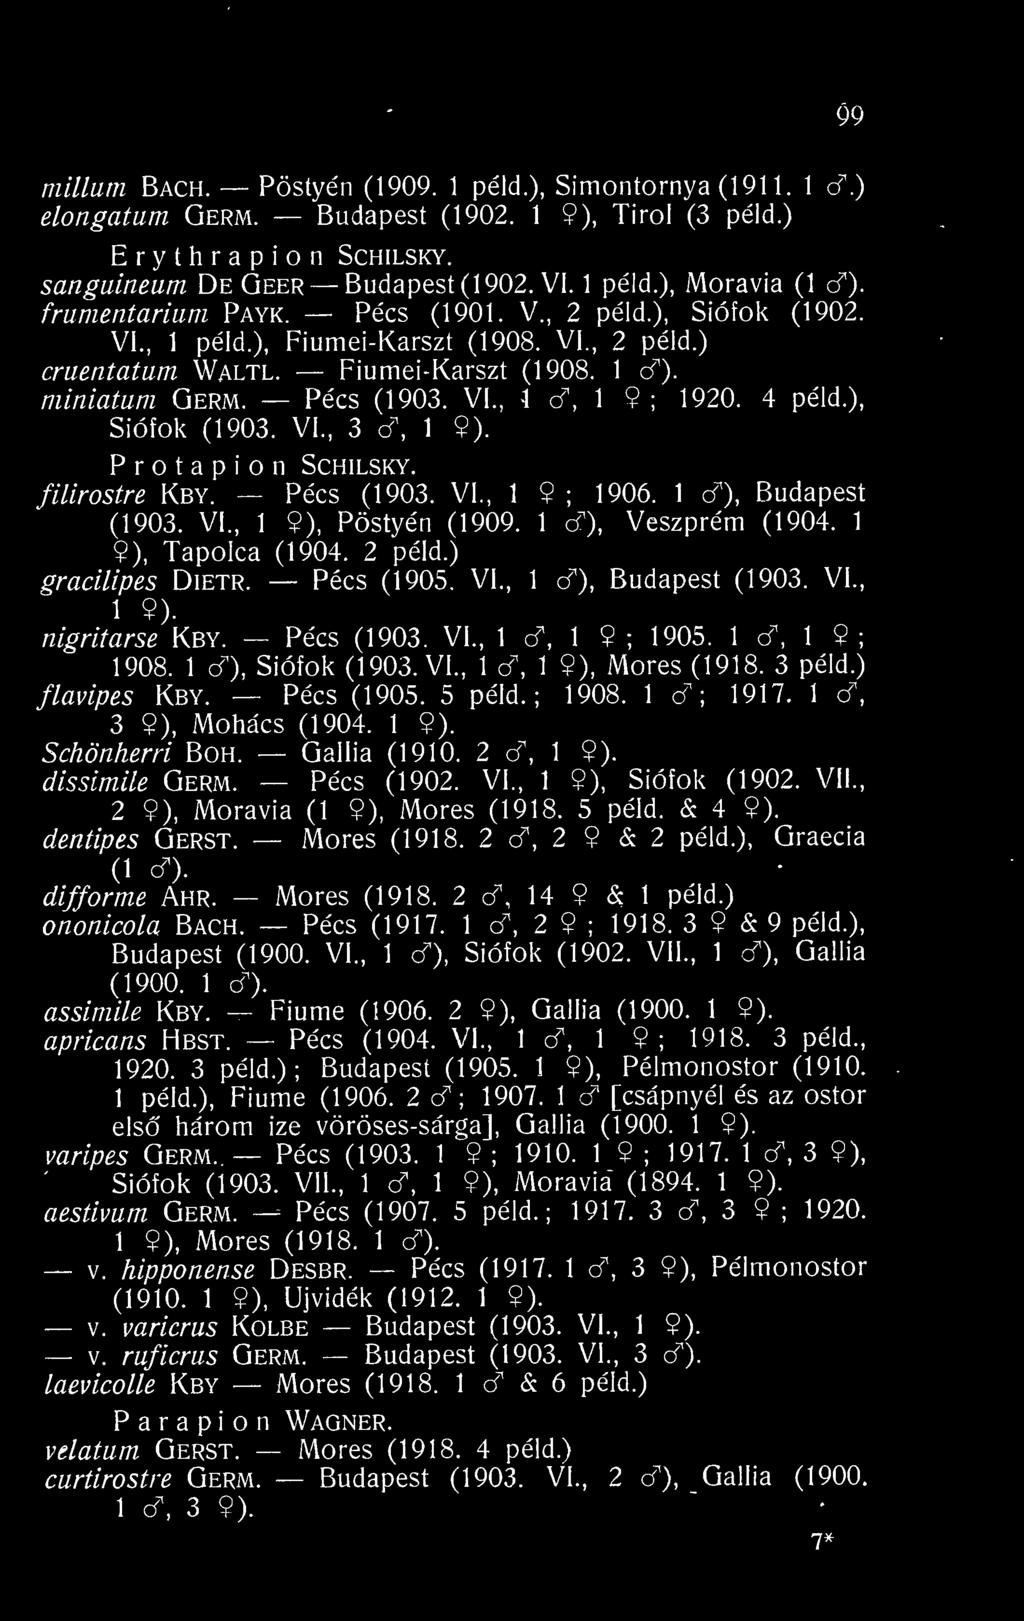 4 péld.). Siófok (1903. VI., 3 d, 1 9). P r o t a p i n Schilsky. filirostre Kby. Pécs (1903. VI., 1 9 ; 1906. 1 cf), Budapest (1903. VI., 1 9), Pöstyén (1909. 1 c"), Veszprém (1904.